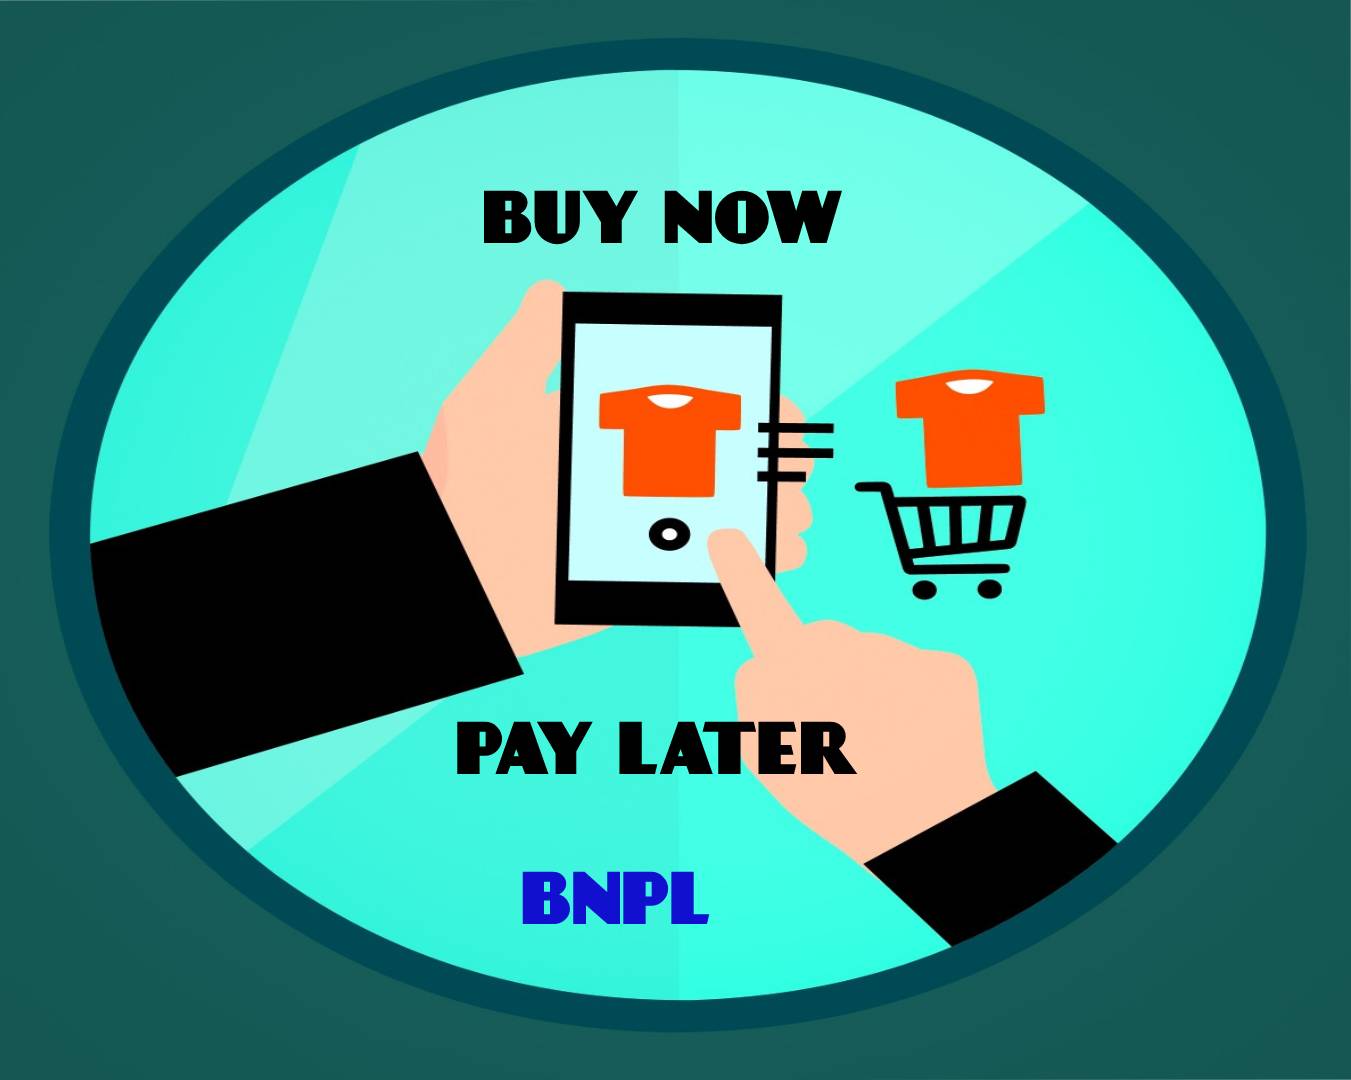 வாடிக்கையாளர் மற்றும் முதலீட்டாளர்கள் இருவரும் விரும்பி வரவேற்கும் BNPL (Buy Now, Pay Later) பின்டெக்